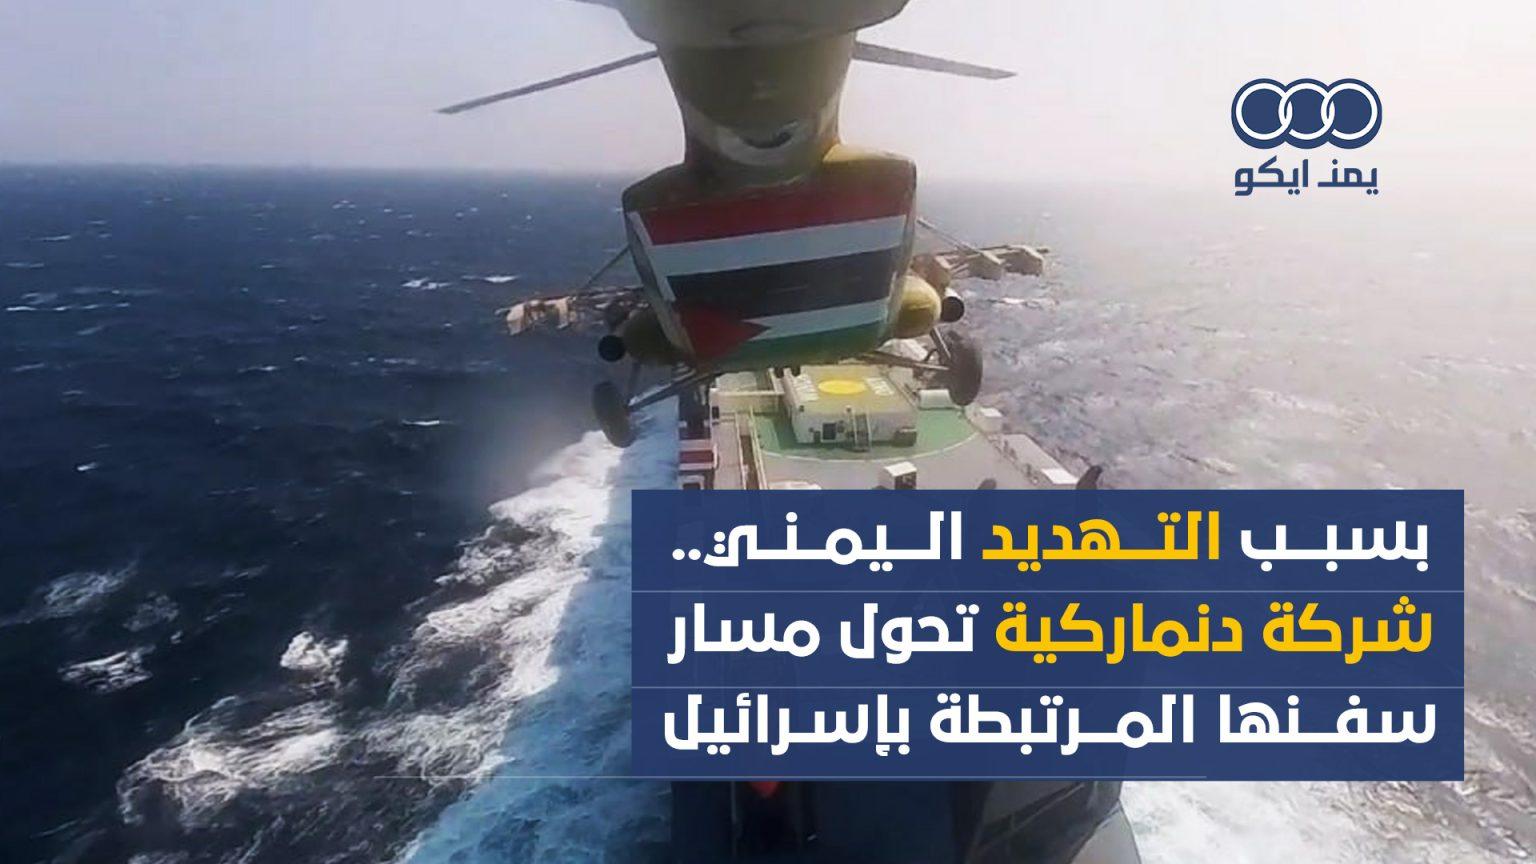 شركة دنماركية تحول مسار سفنها المرتبطة بإسرائيل .بسبب تهديدات اليمن 